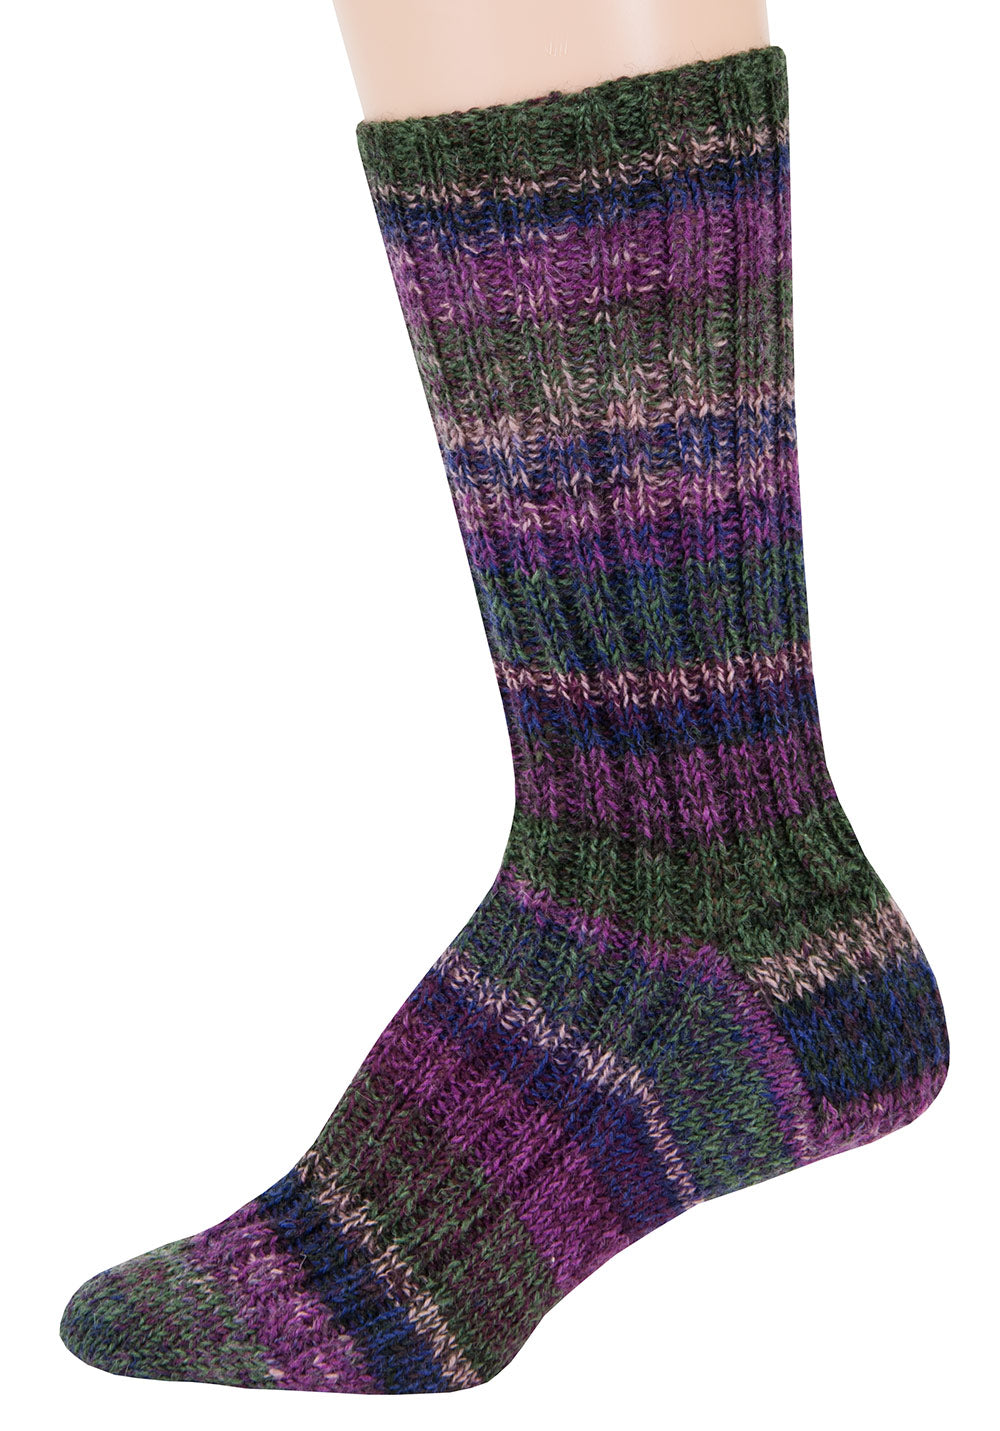 Free Top Down Ribbed Socks Pattern – Mary Maxim Ltd